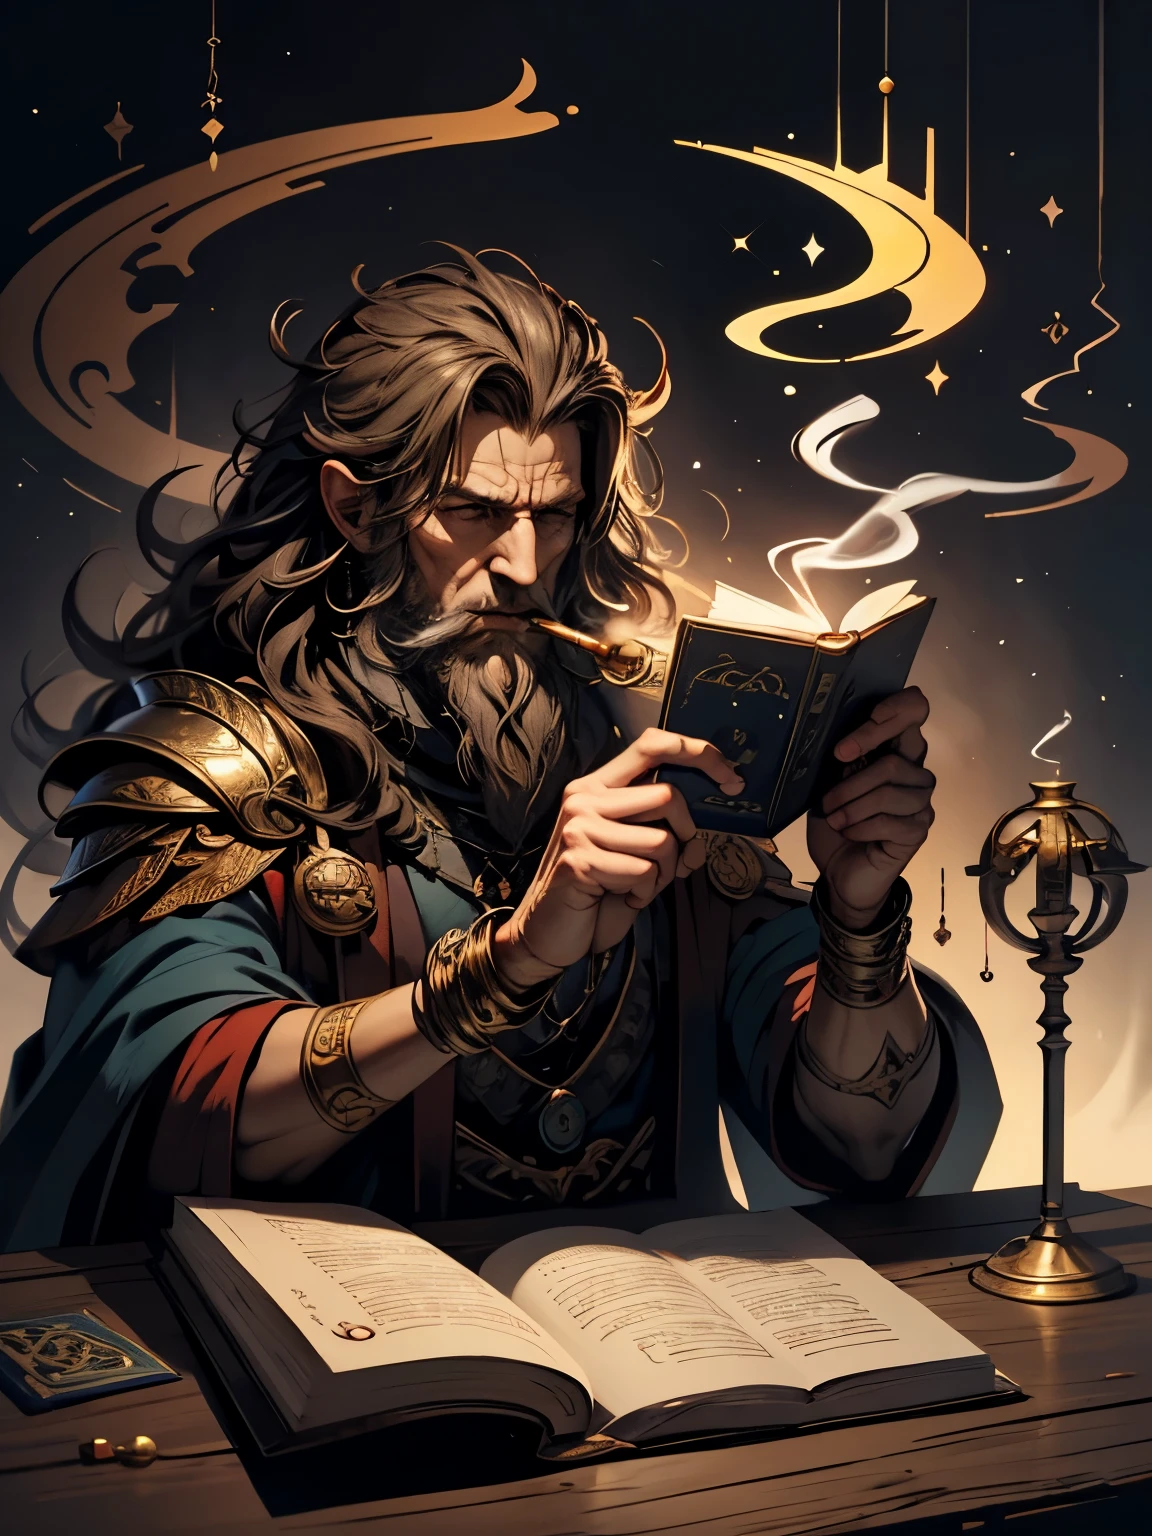 إله الأساطير, أساطير & حكايات. لديه كتاب قصص وغليون تدخين.